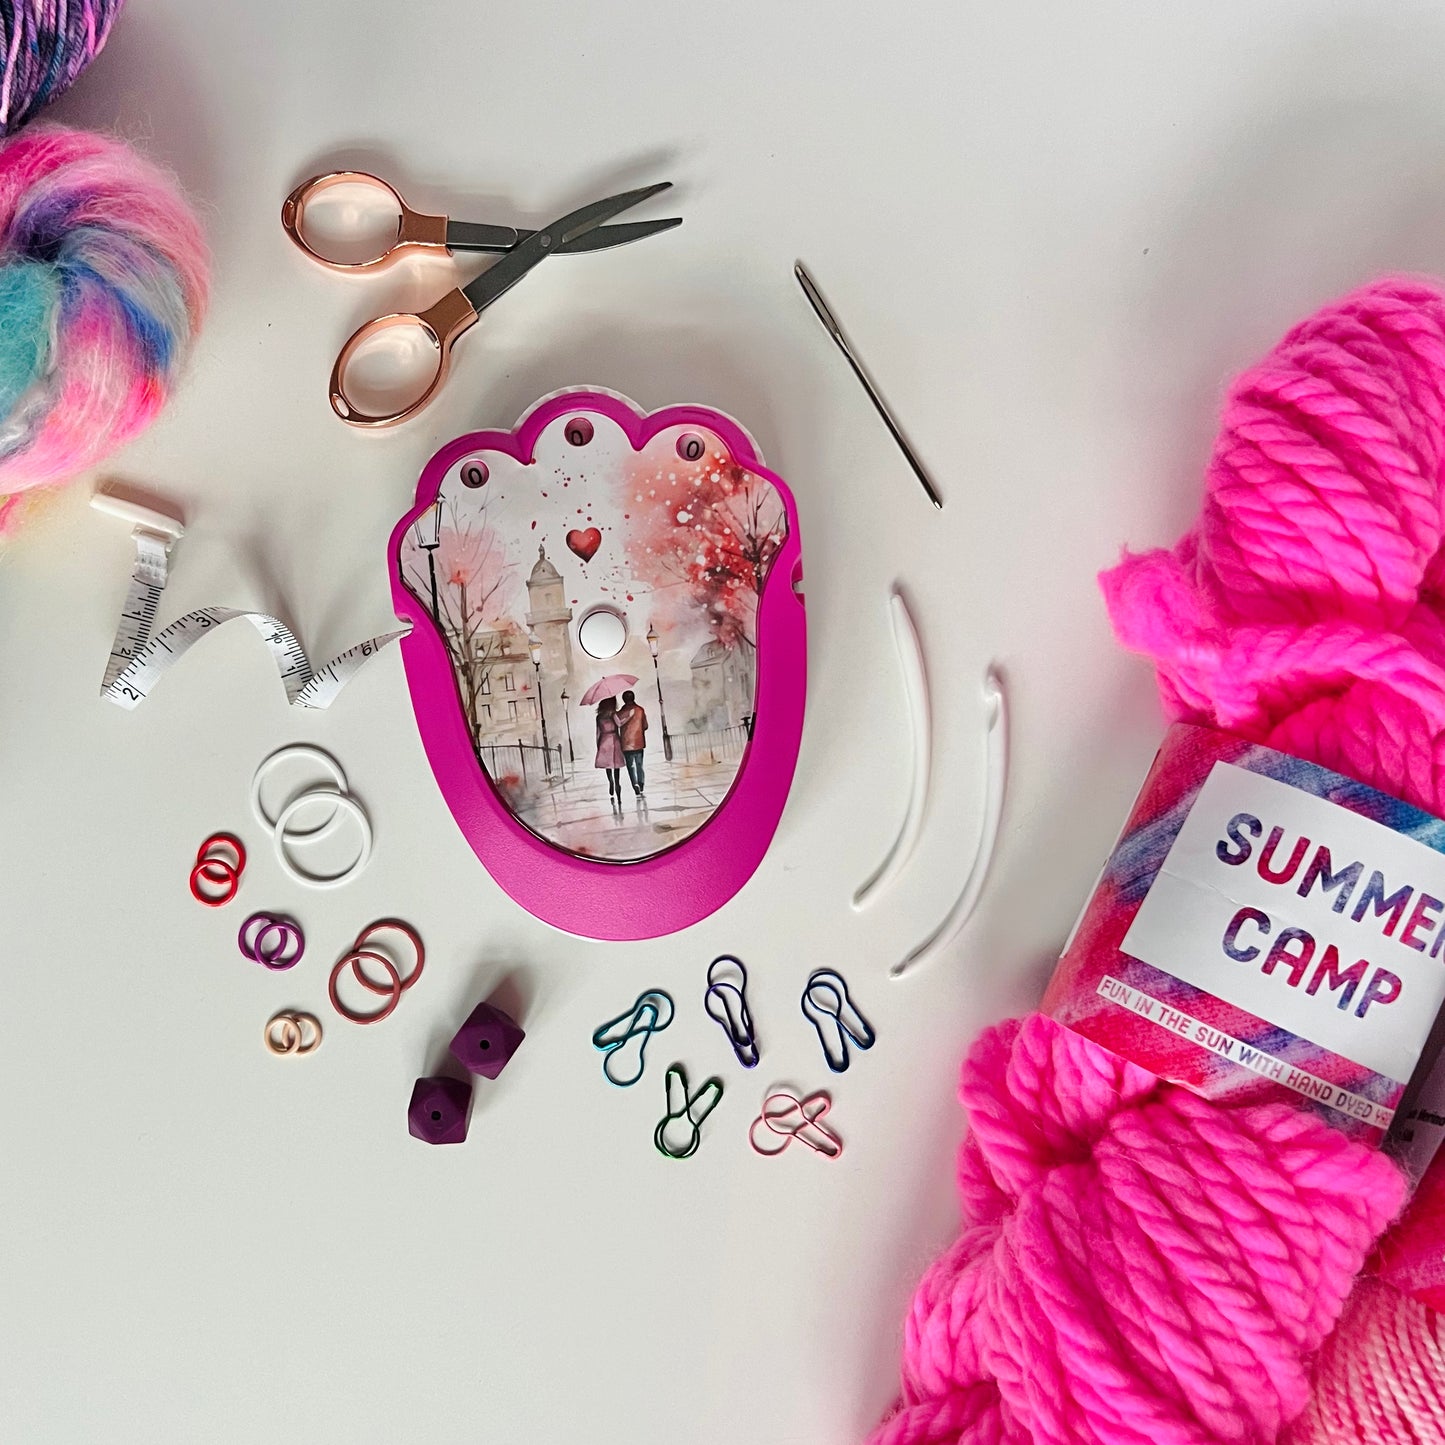 The Knit & Crochet Kit - Knitting & Crochet Tool Kit - Be Mine